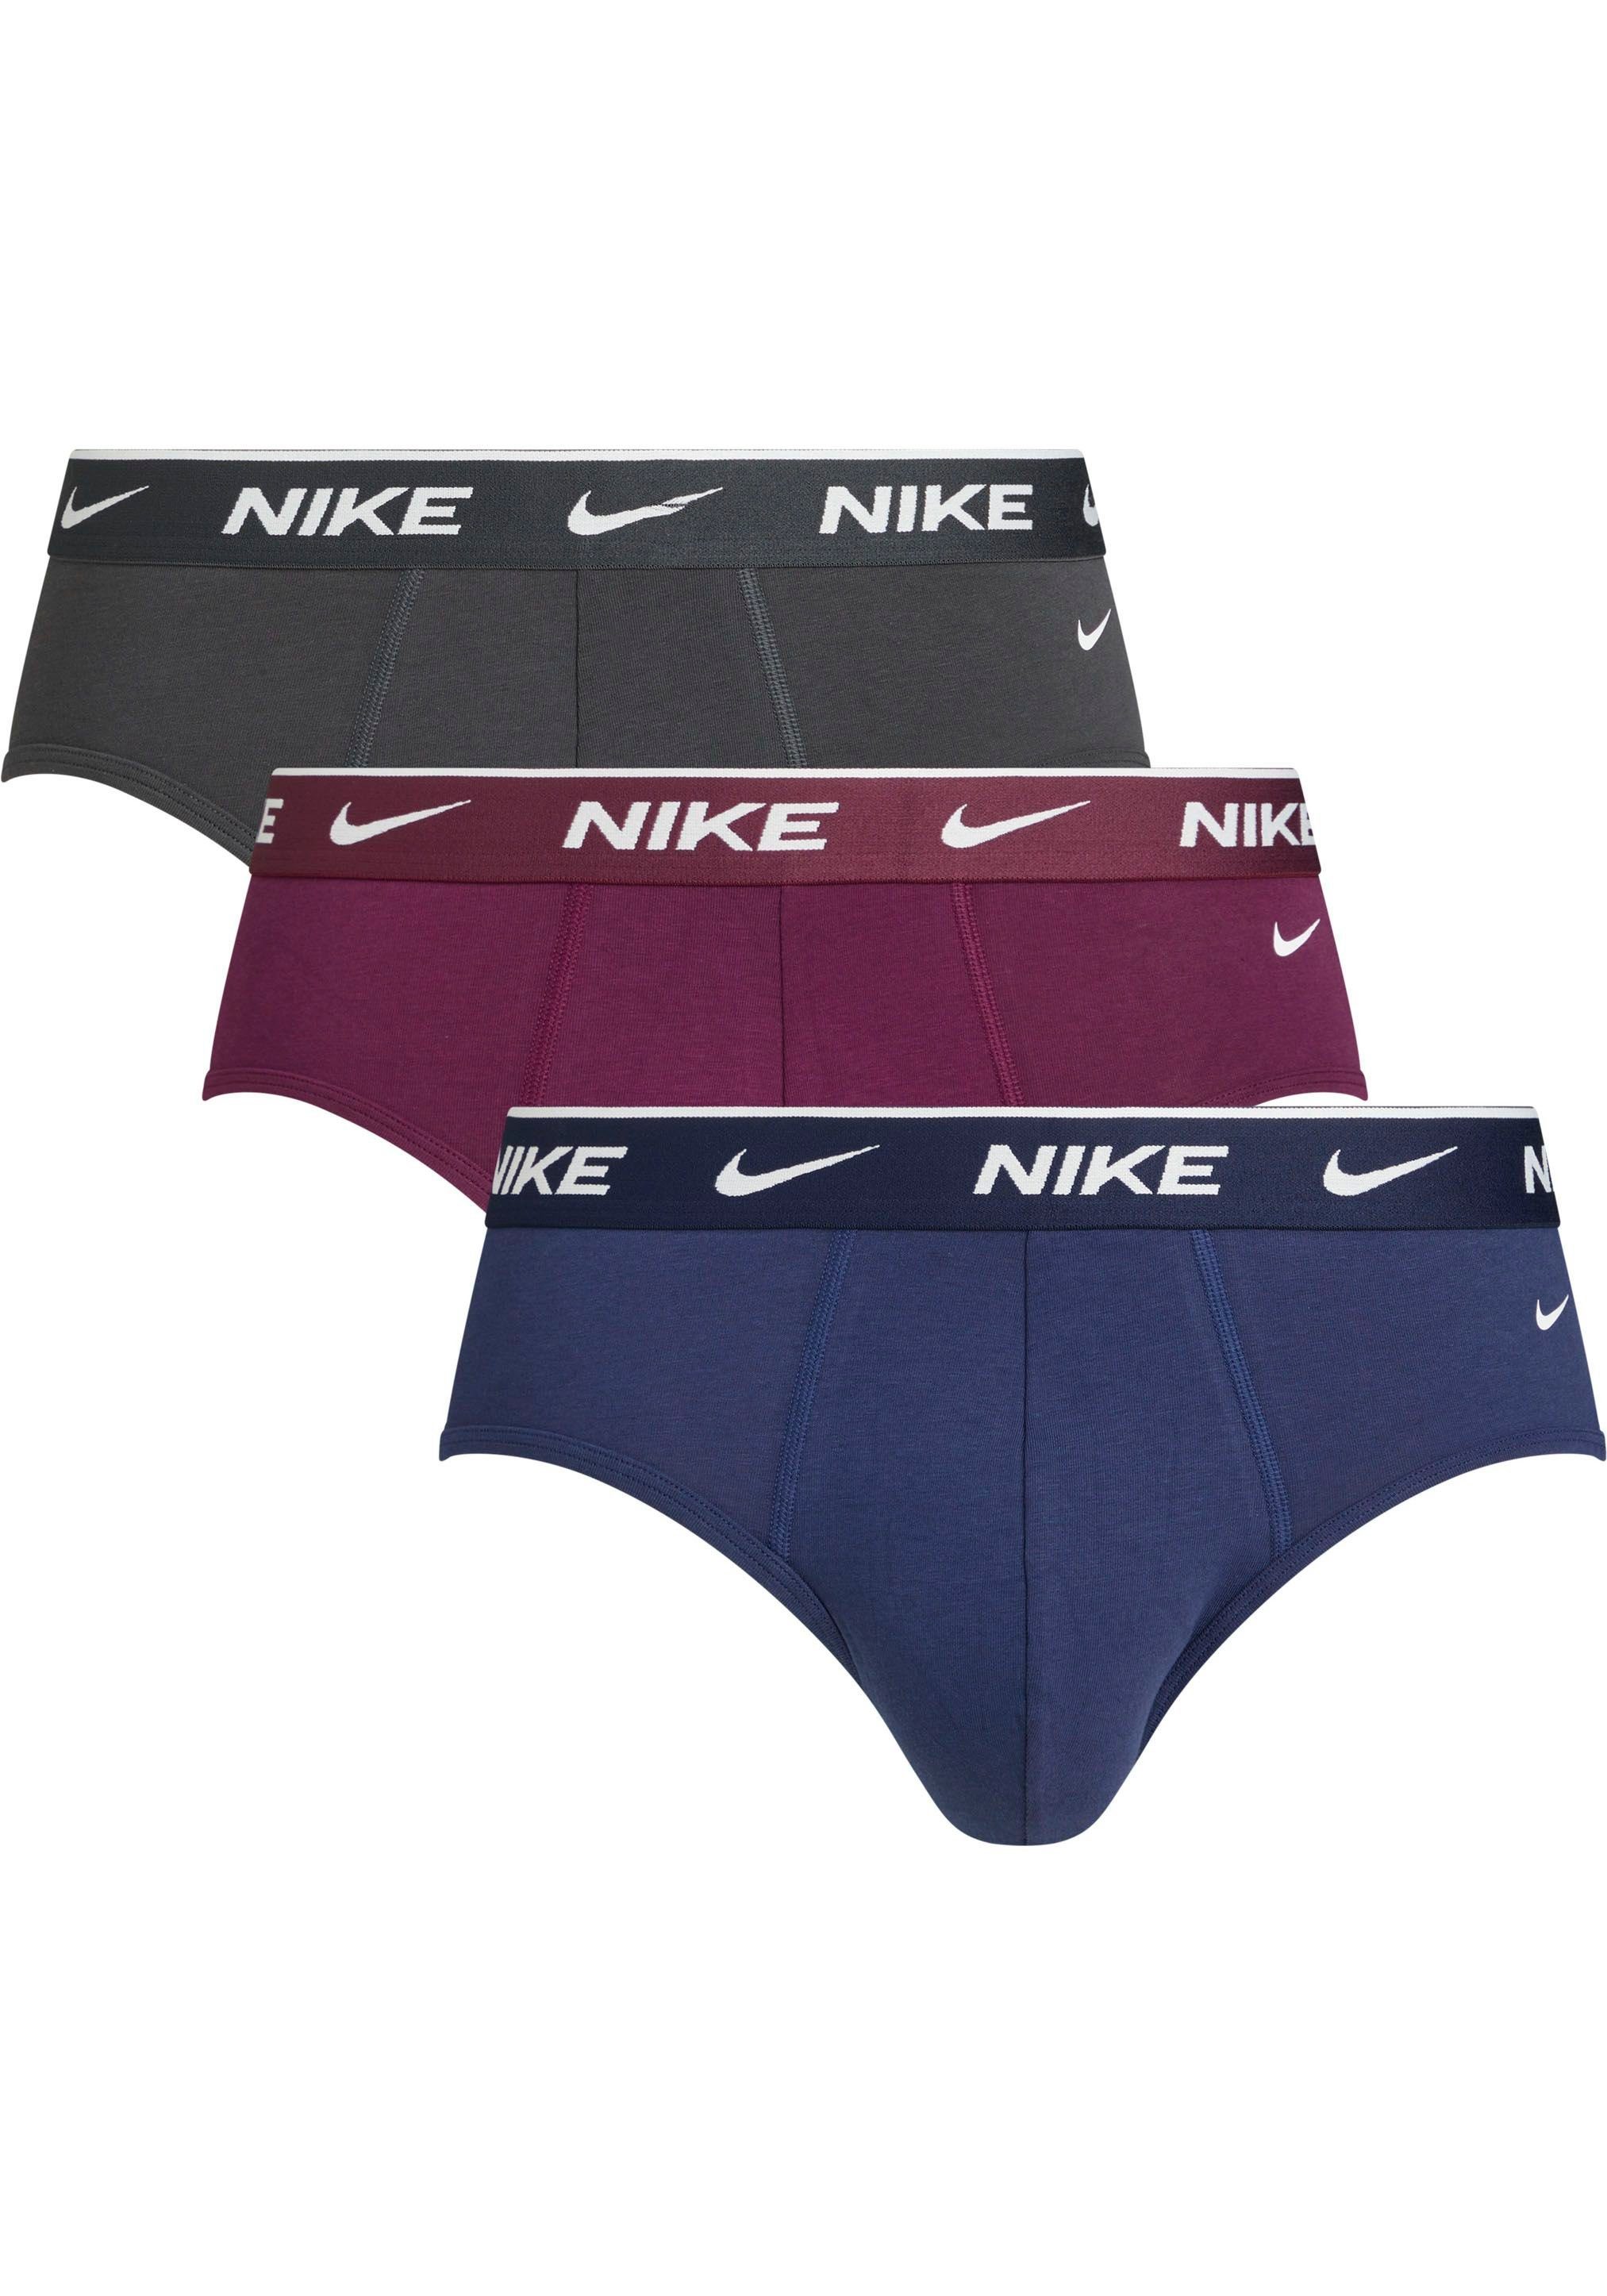 NIKE Underwear Slip BRIEF 3PK (Packung, 3er-Pack) mit NIKE Logo-Elastikbund (3 Stück)